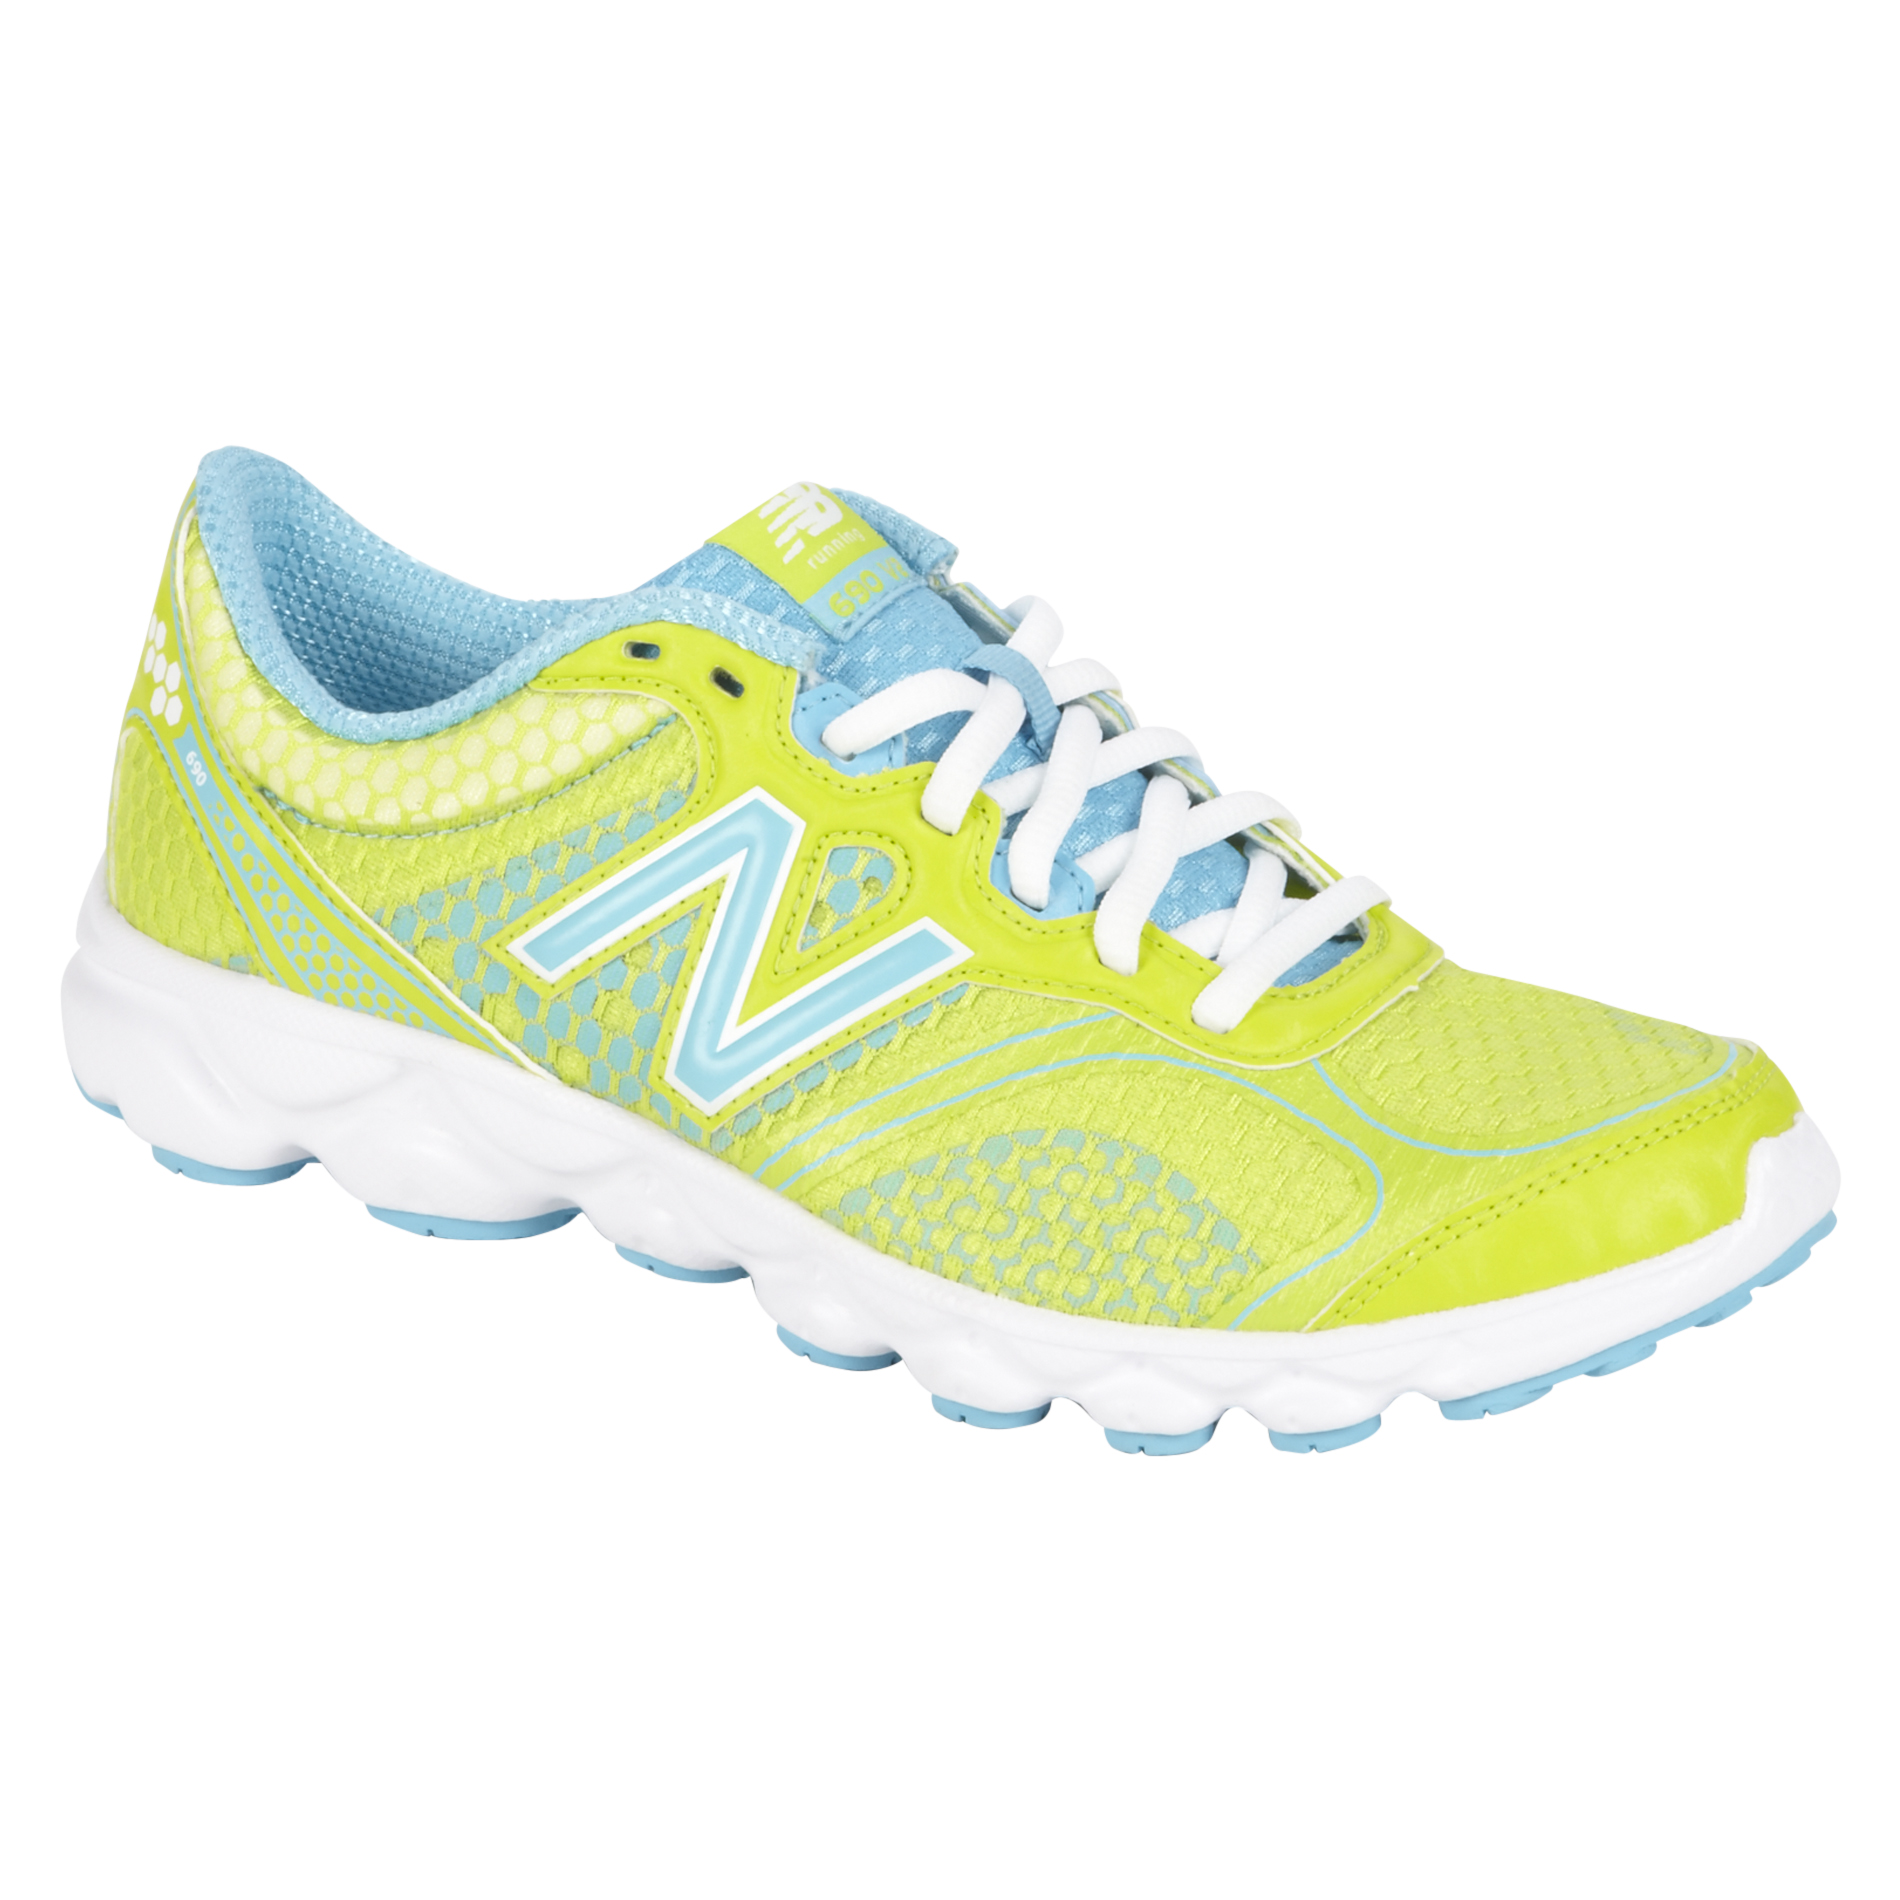 New Balance Women's 690V2 Running Athletic Shoe - Lime/Blue